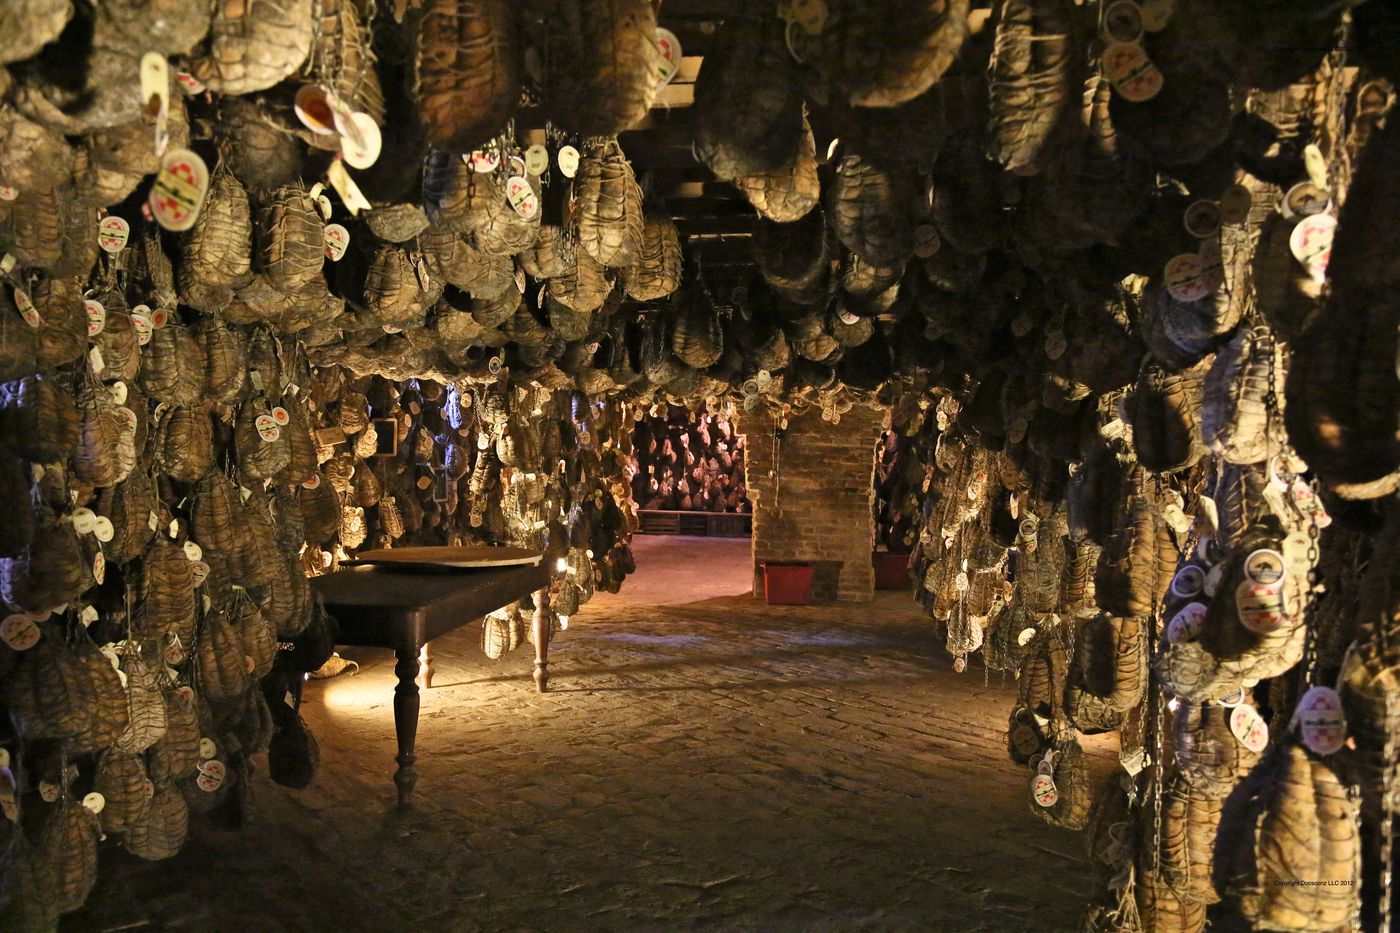 Culatello di Zibello ageing cellars